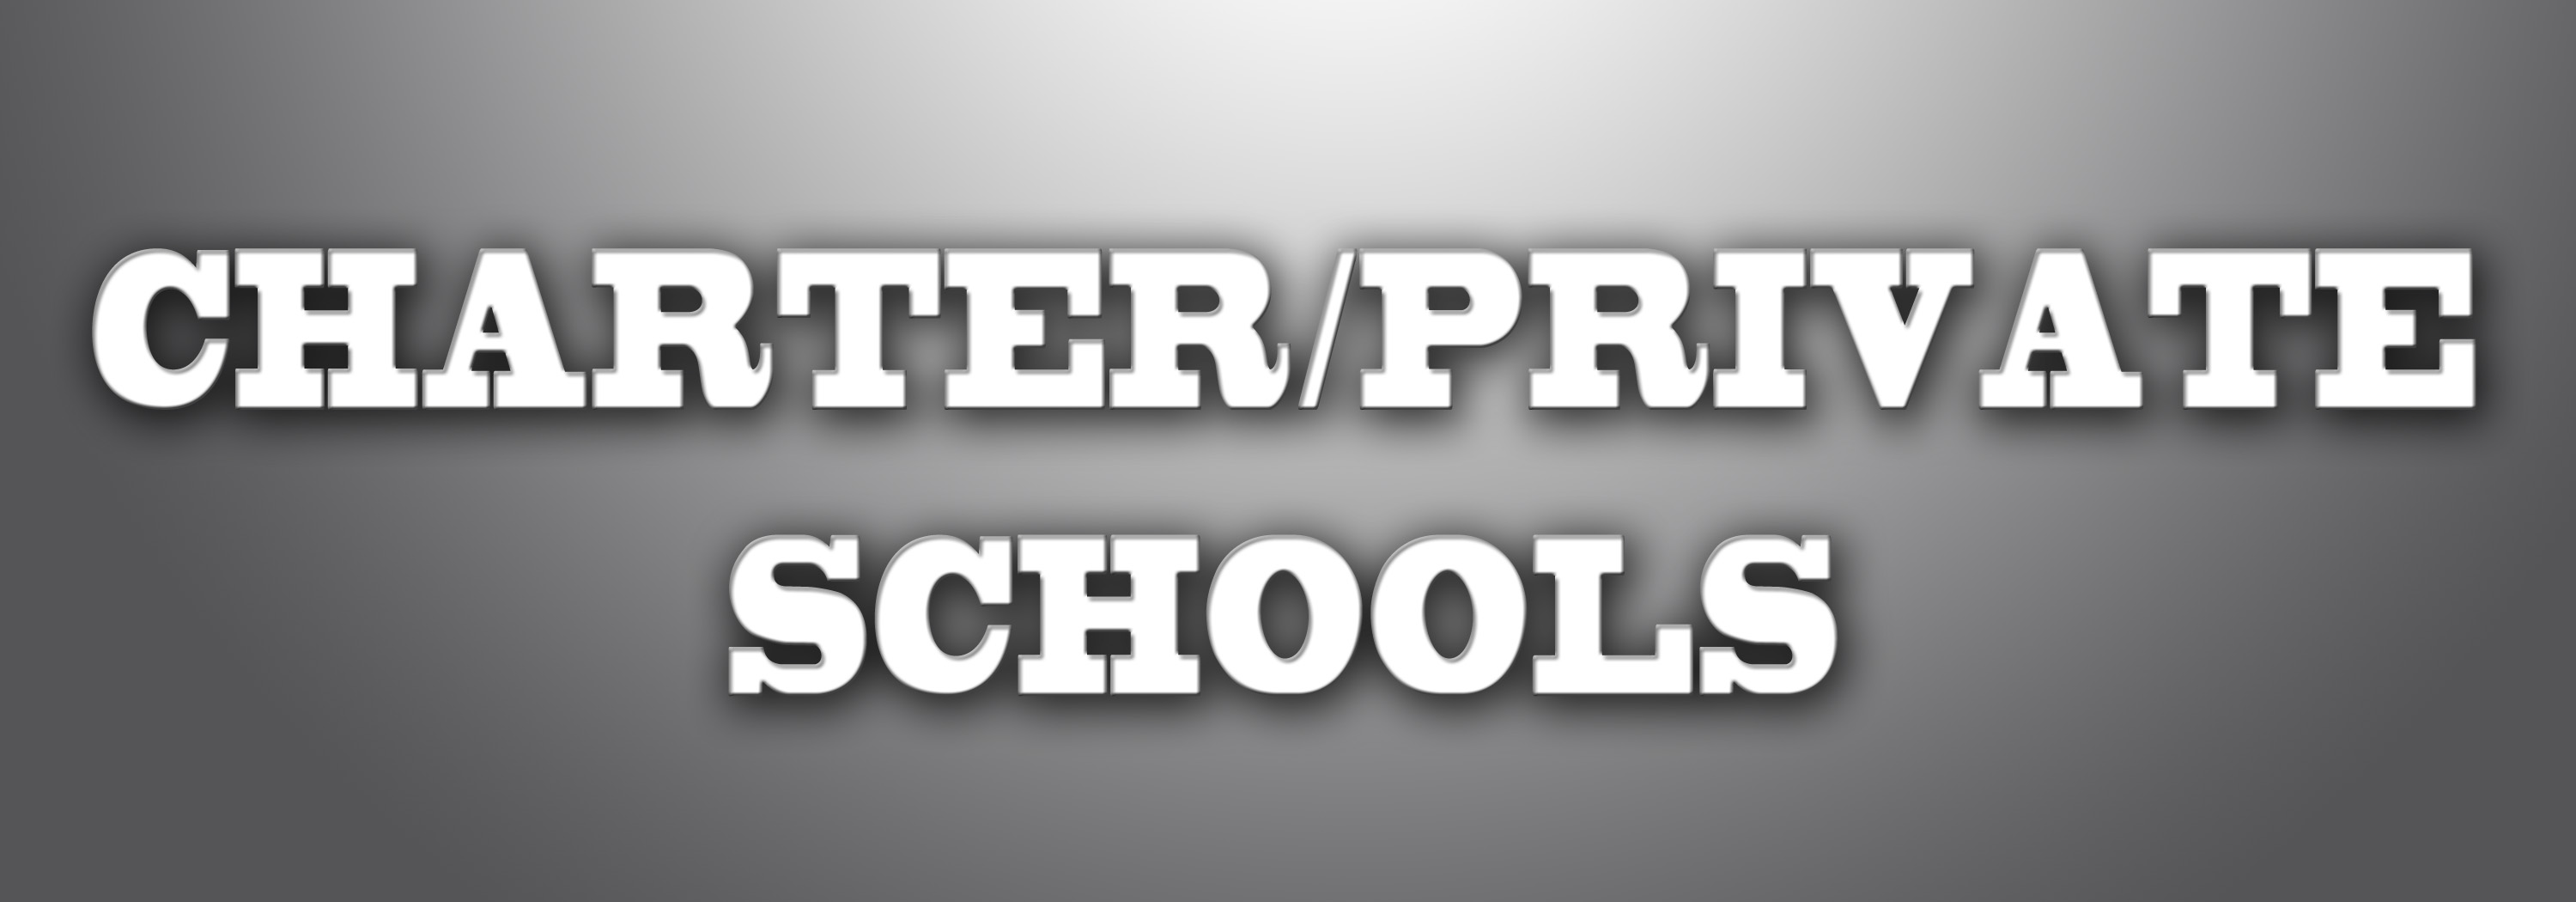 Charter/Private Schools